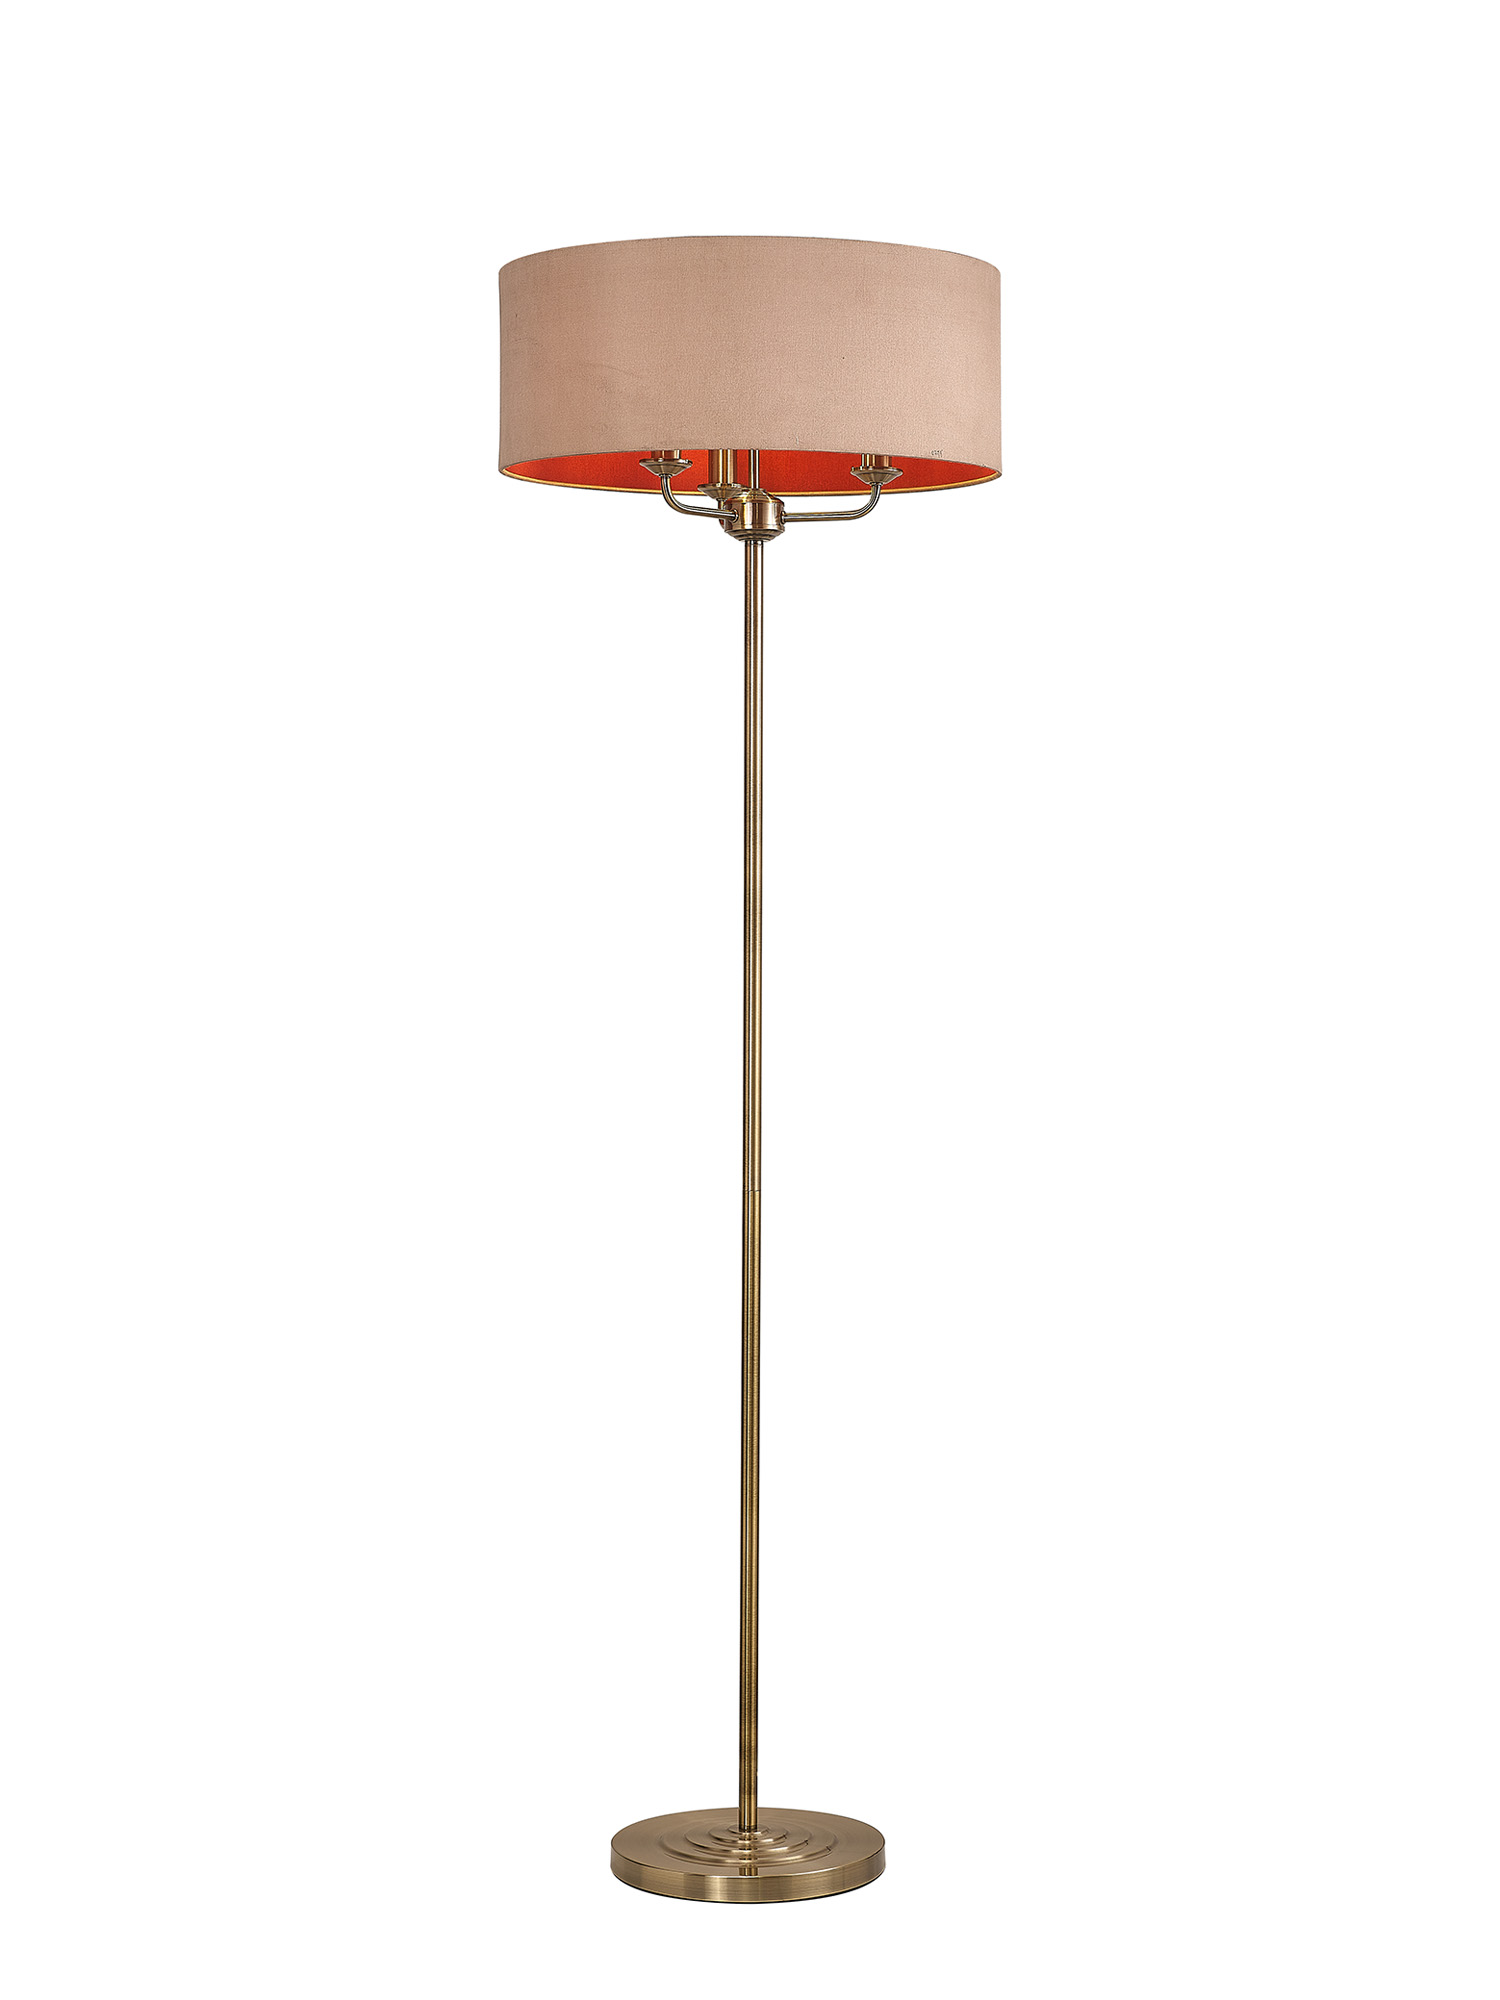 DK0911  Banyan 45cm 3 Light Floor Lamp Antique Brass, Antique Gold